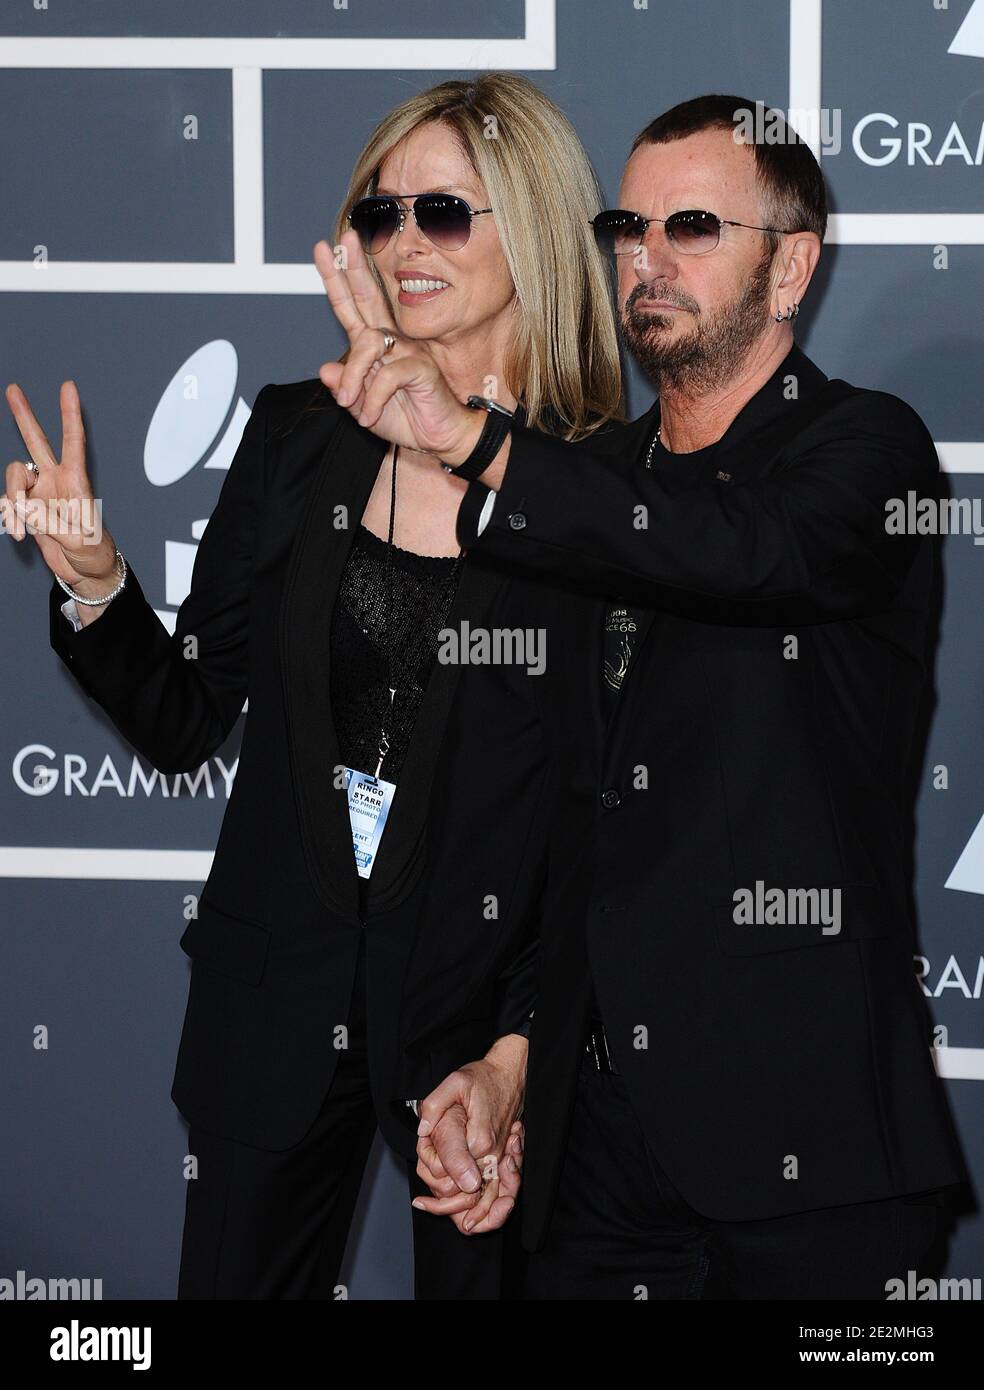 Ringo Starr e Barbara Bach al 52° Grammy Awards, tenutosi presso lo Staples Center di Los Angeles, California, USA il 31 gennaio 2010. Foto di Lionel Hahn/ABACAPRESS.COM (nella foto: Ringo Star, Barbara Bach ) Foto Stock